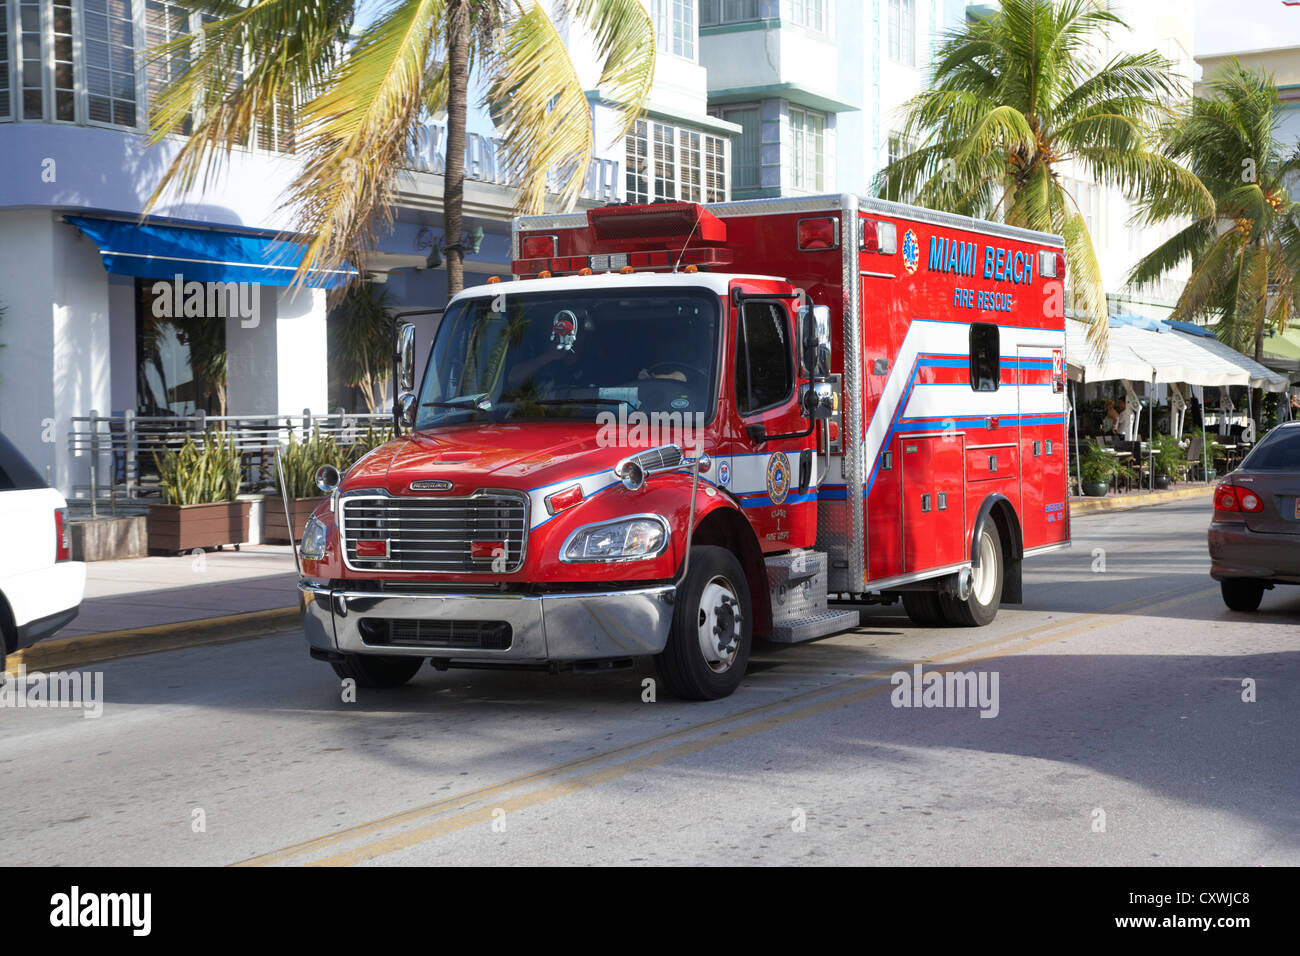 Véhicule d'incendie et de sauvetage de Miami Beach South Beach floride usa Banque D'Images